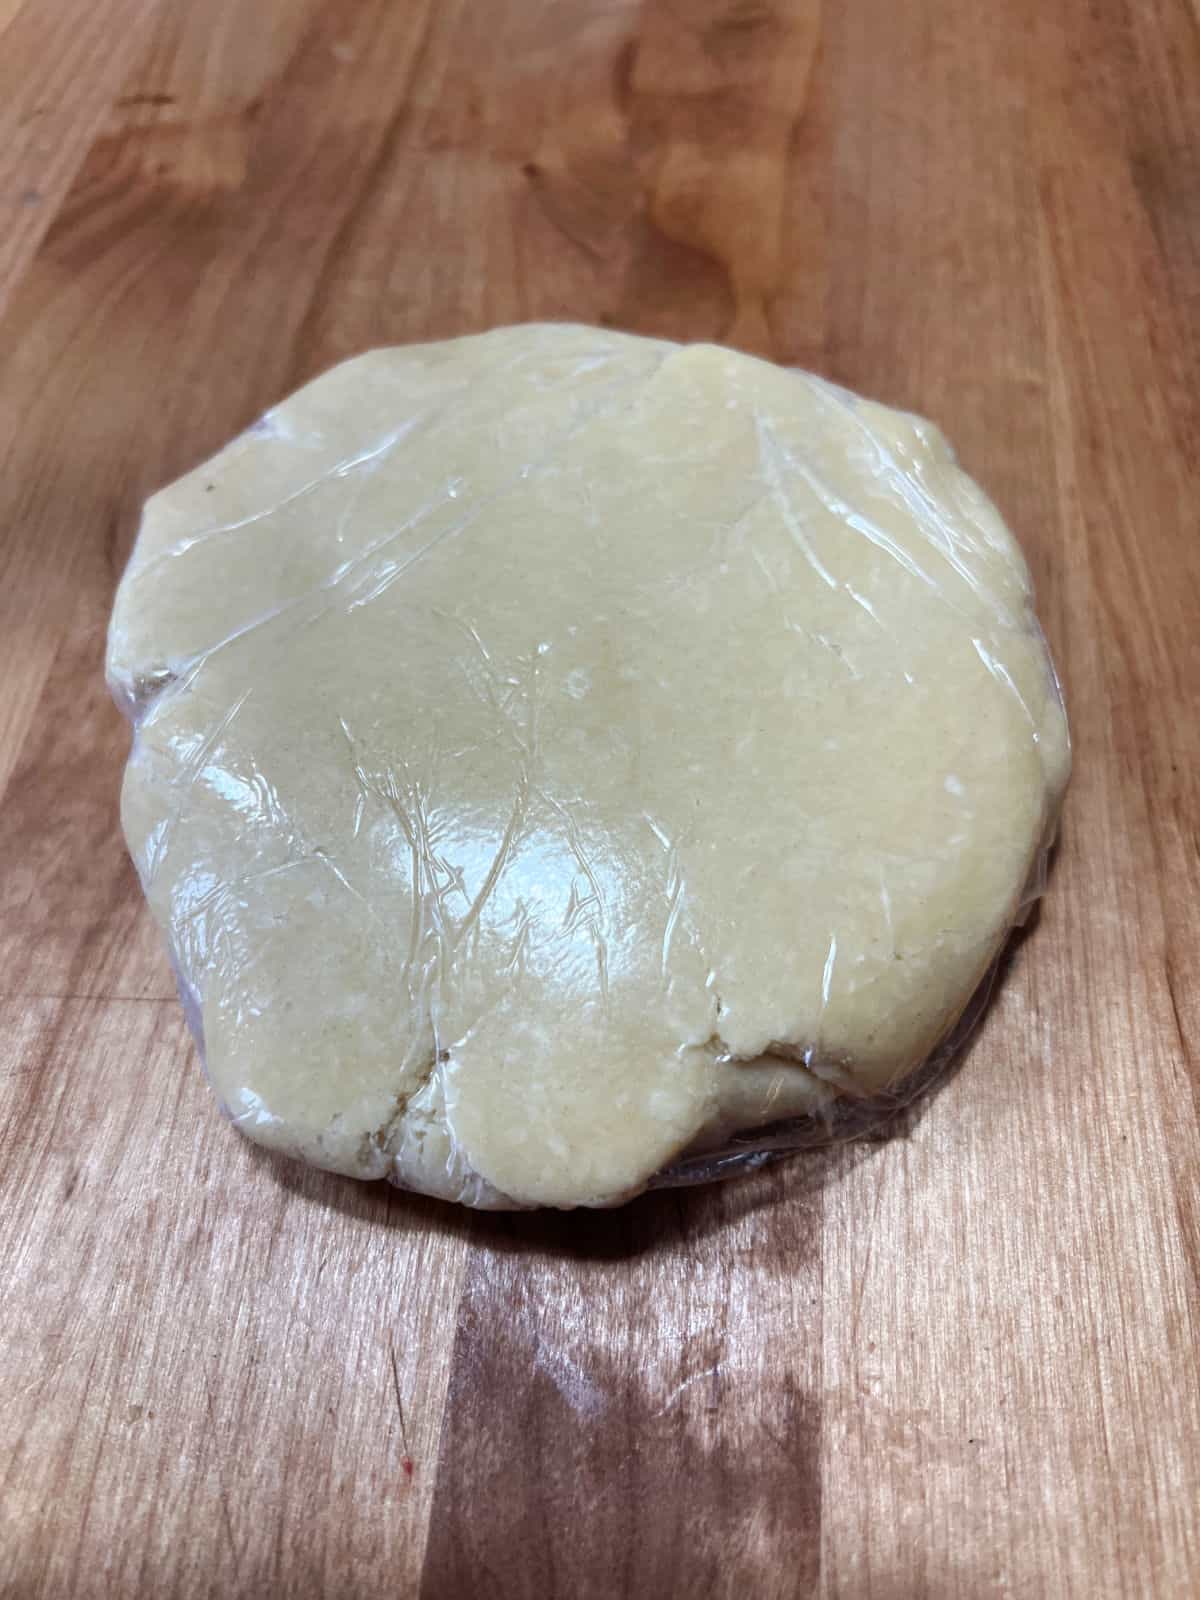 pie crust dough in platic wrap.